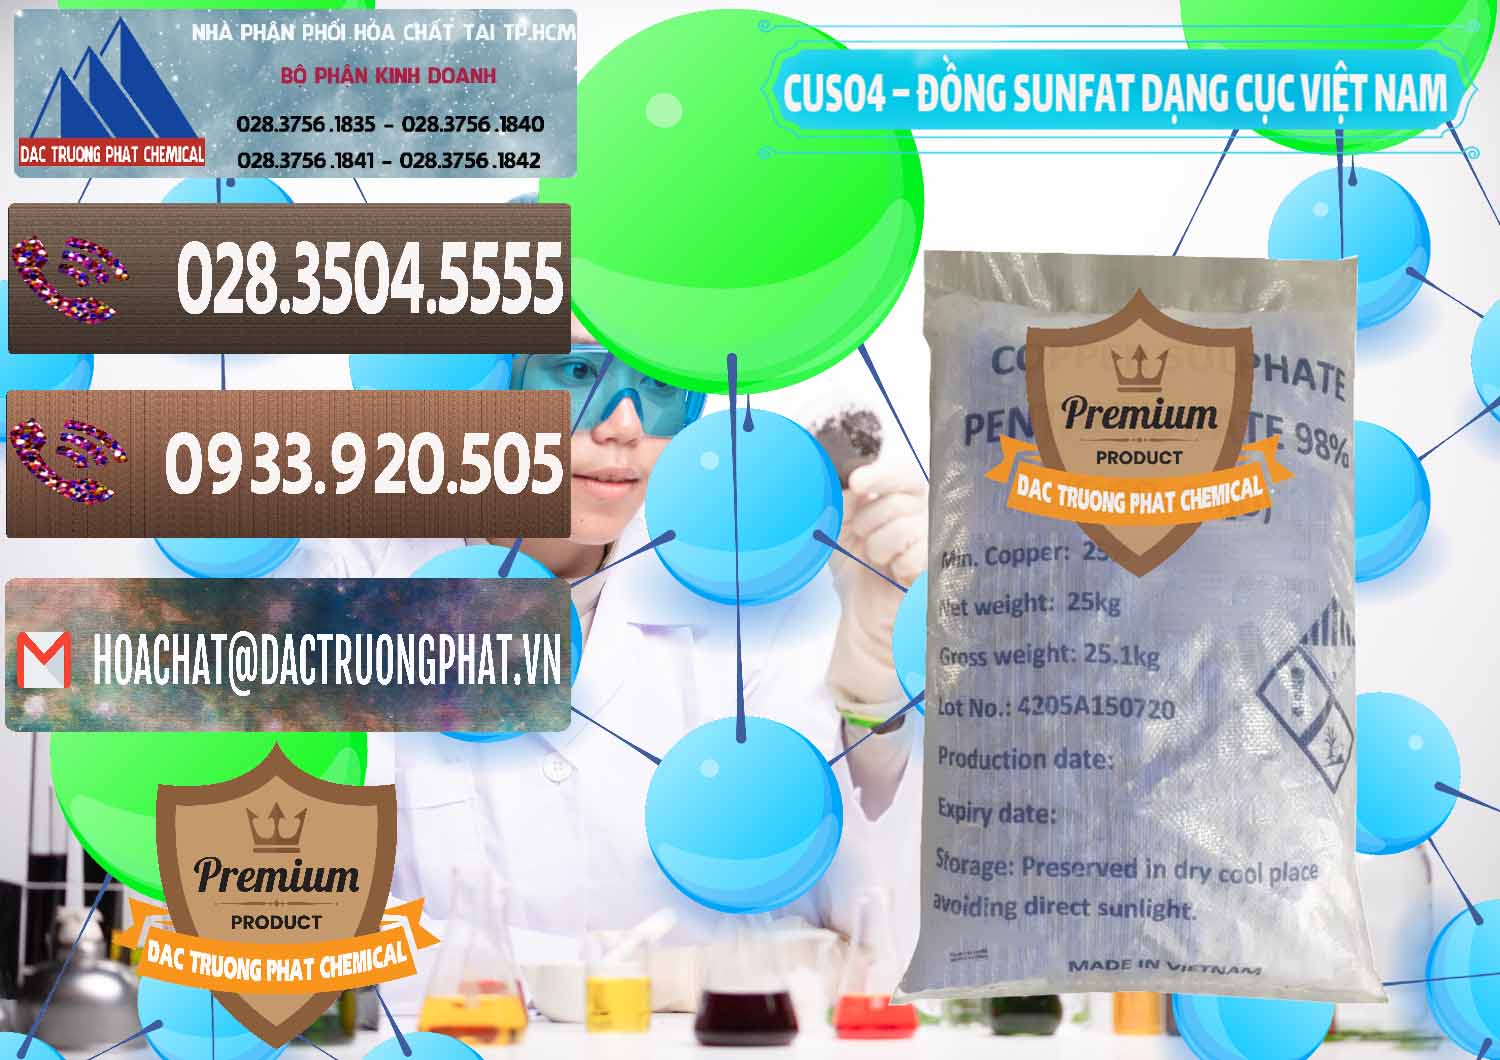 Cty chuyên cung ứng - phân phối CUSO4 – Đồng Sunfat Dạng Cục Việt Nam - 0303 - Đơn vị chuyên kinh doanh _ phân phối hóa chất tại TP.HCM - hoachatviet.net